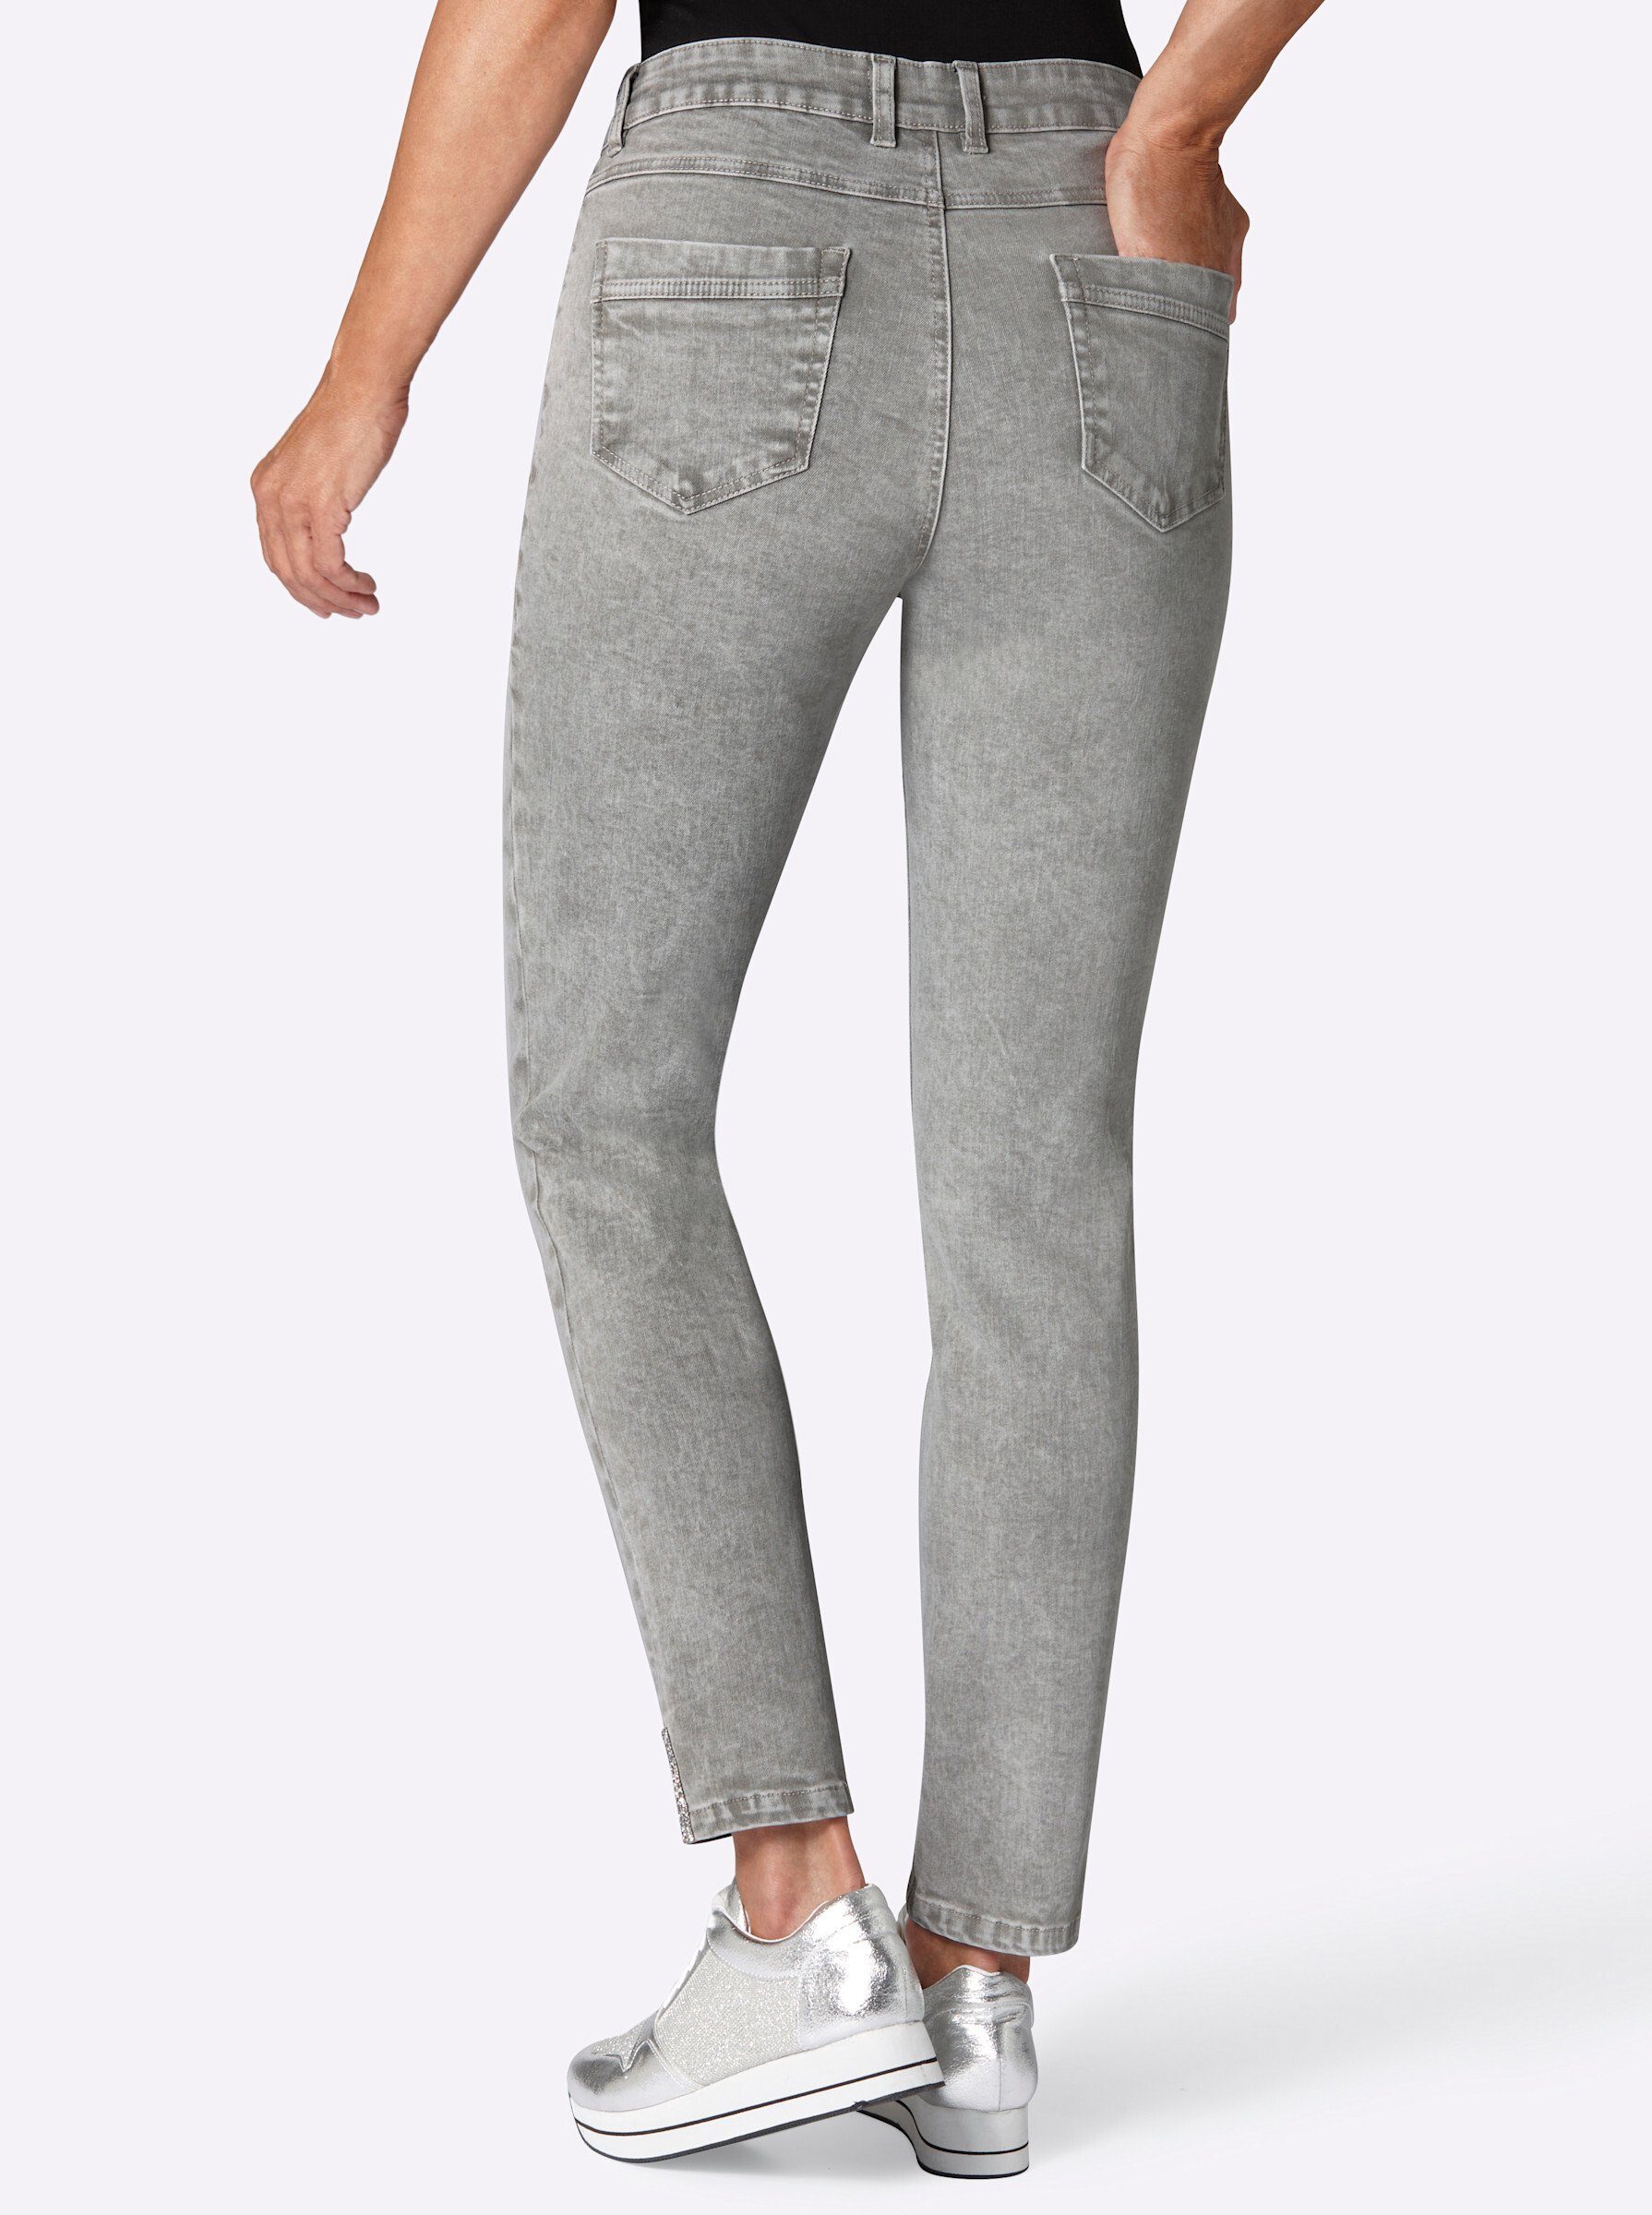 Bequeme WITT Jeans grey-denim WEIDEN